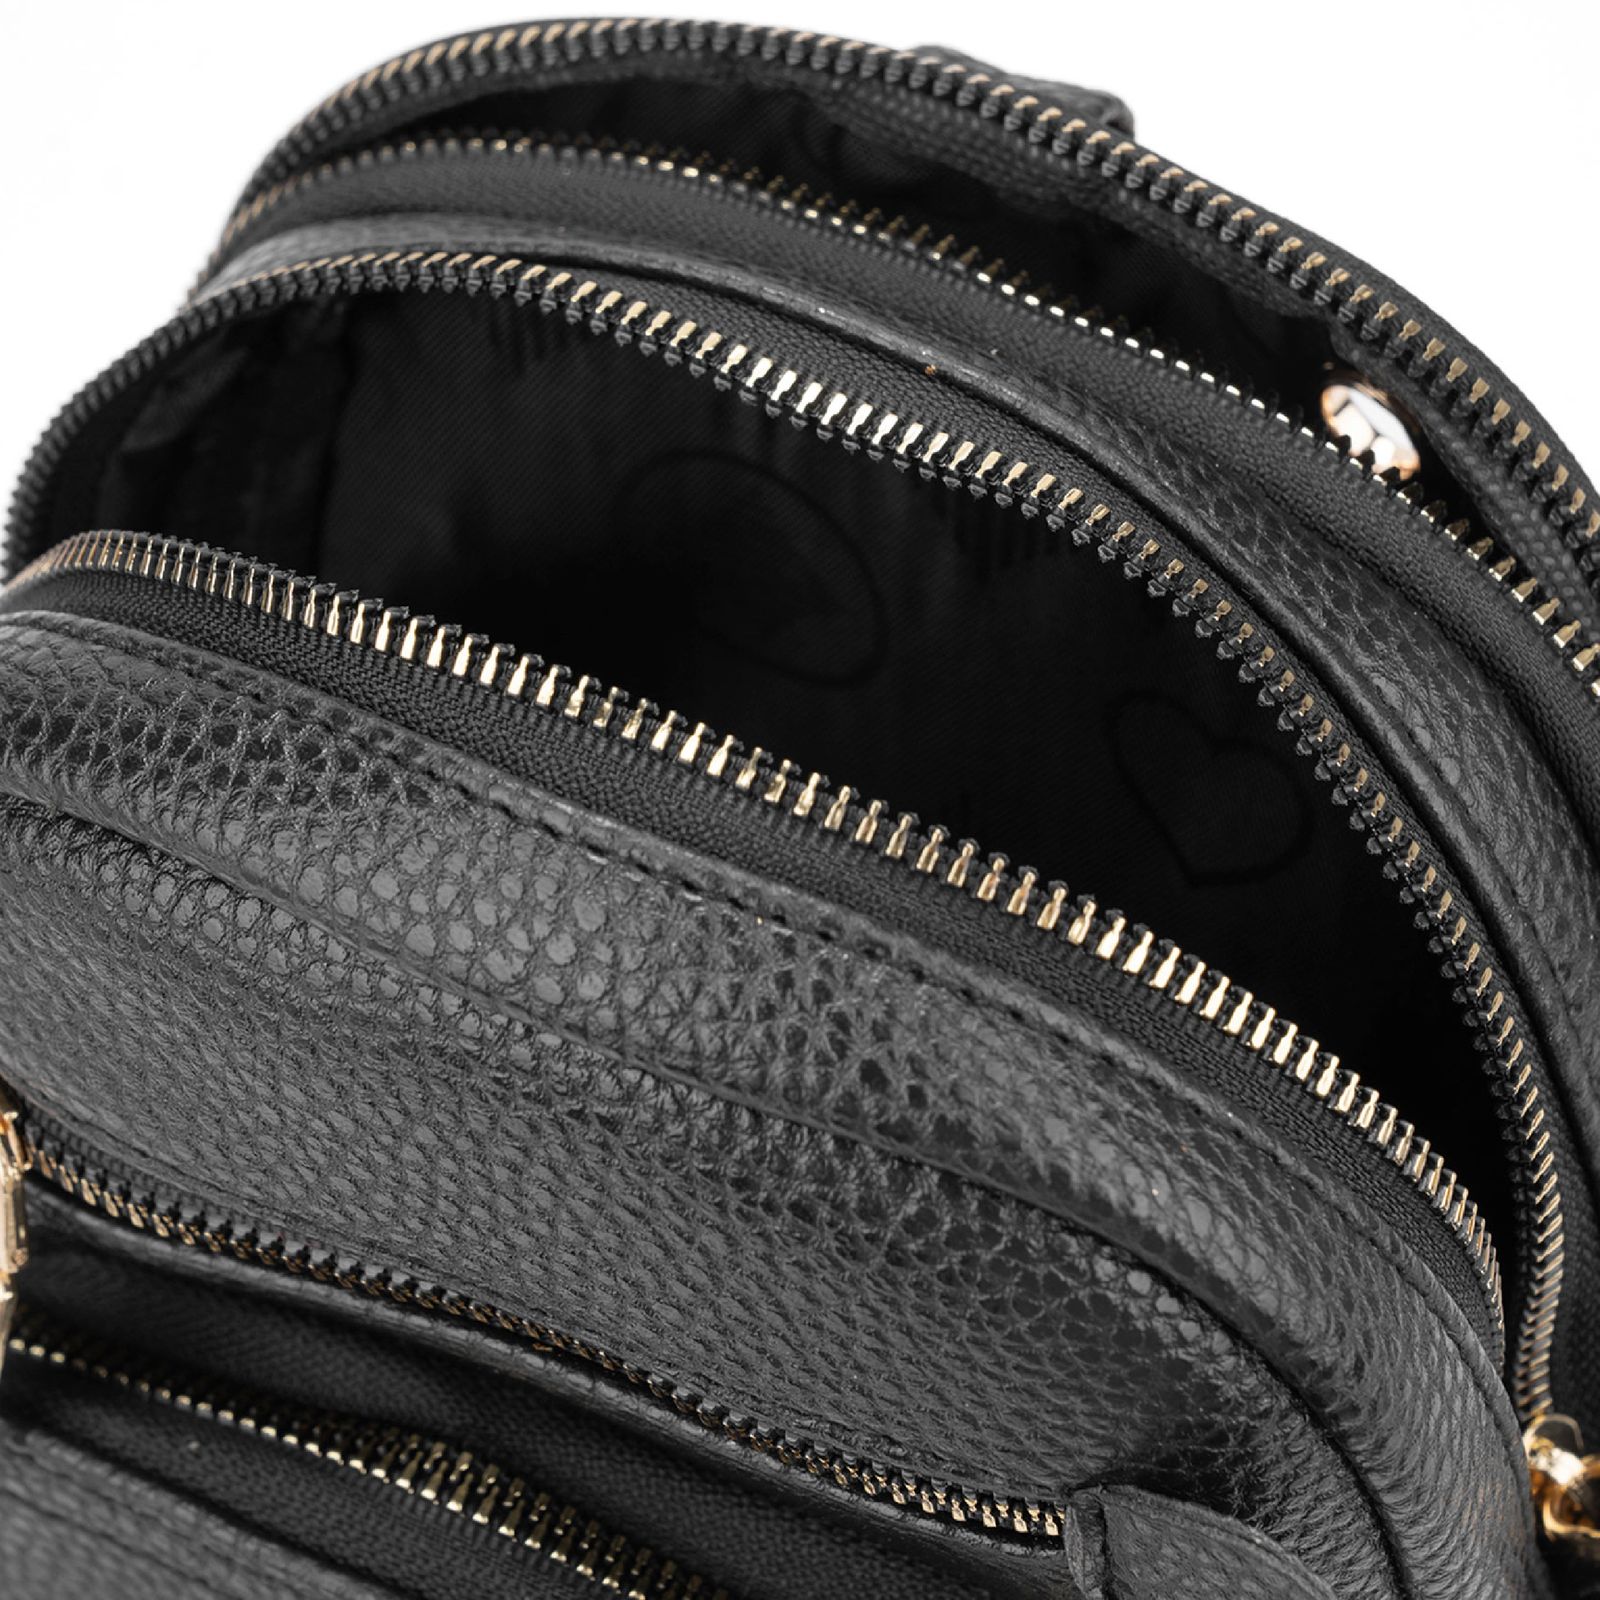 کیف دوشی زنانه بیسراک مدل cross-body کد 404010 رنگ مشکی -  - 2